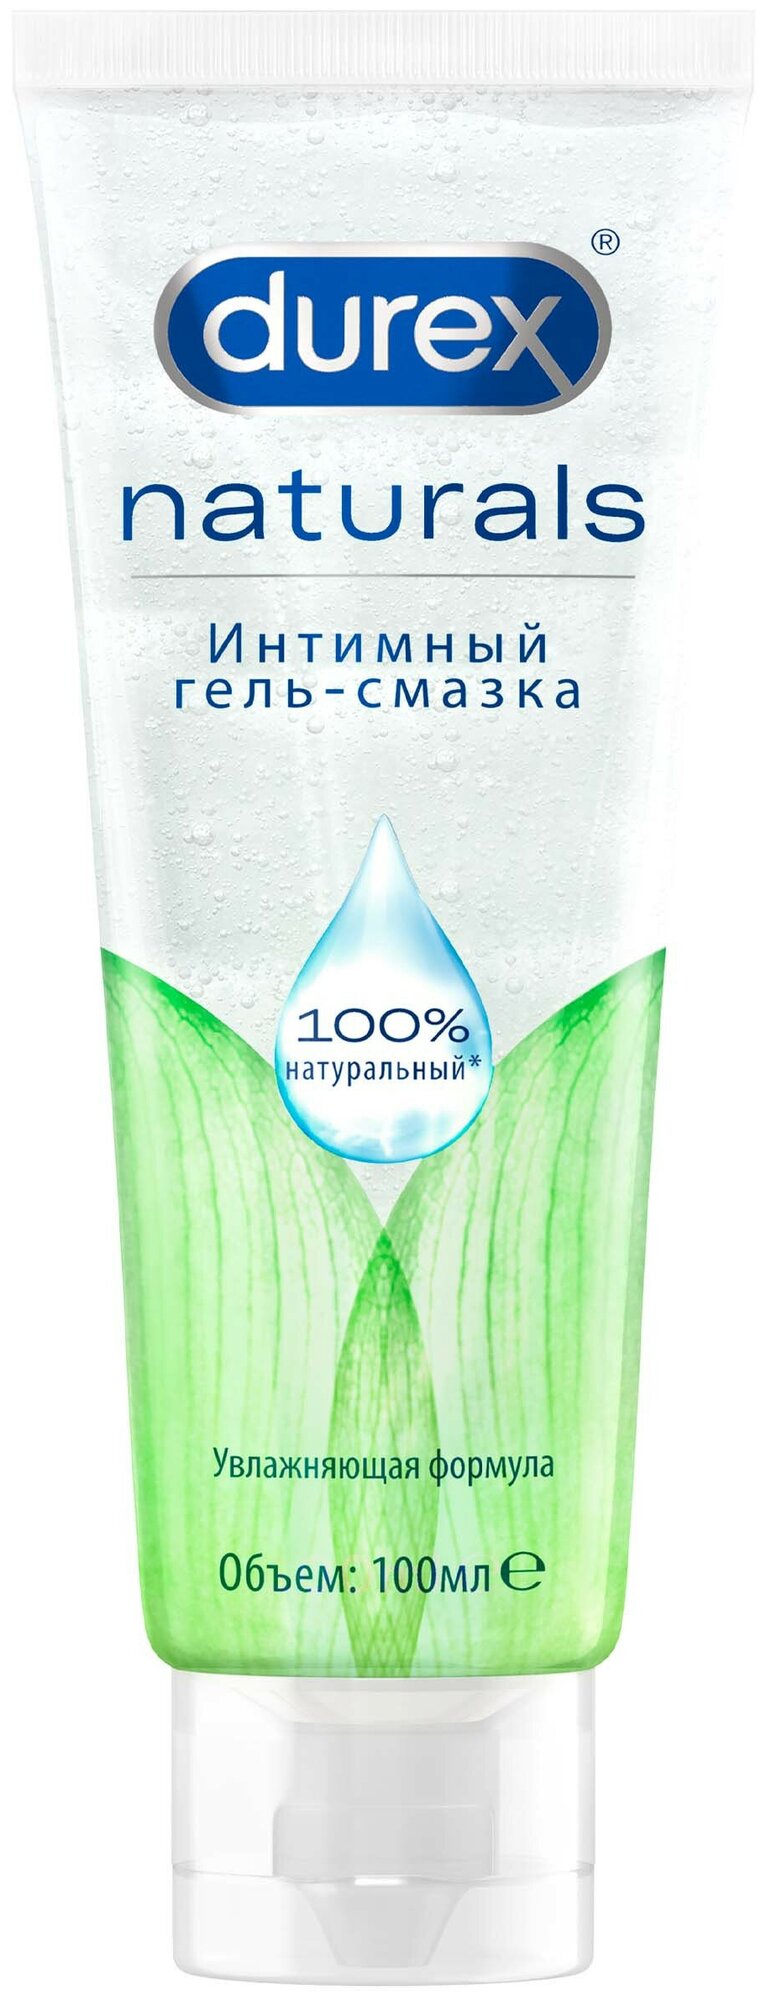 Интимный гель-смазка Durex Naturals (100% натуральные ингредиенты) 100 мл.